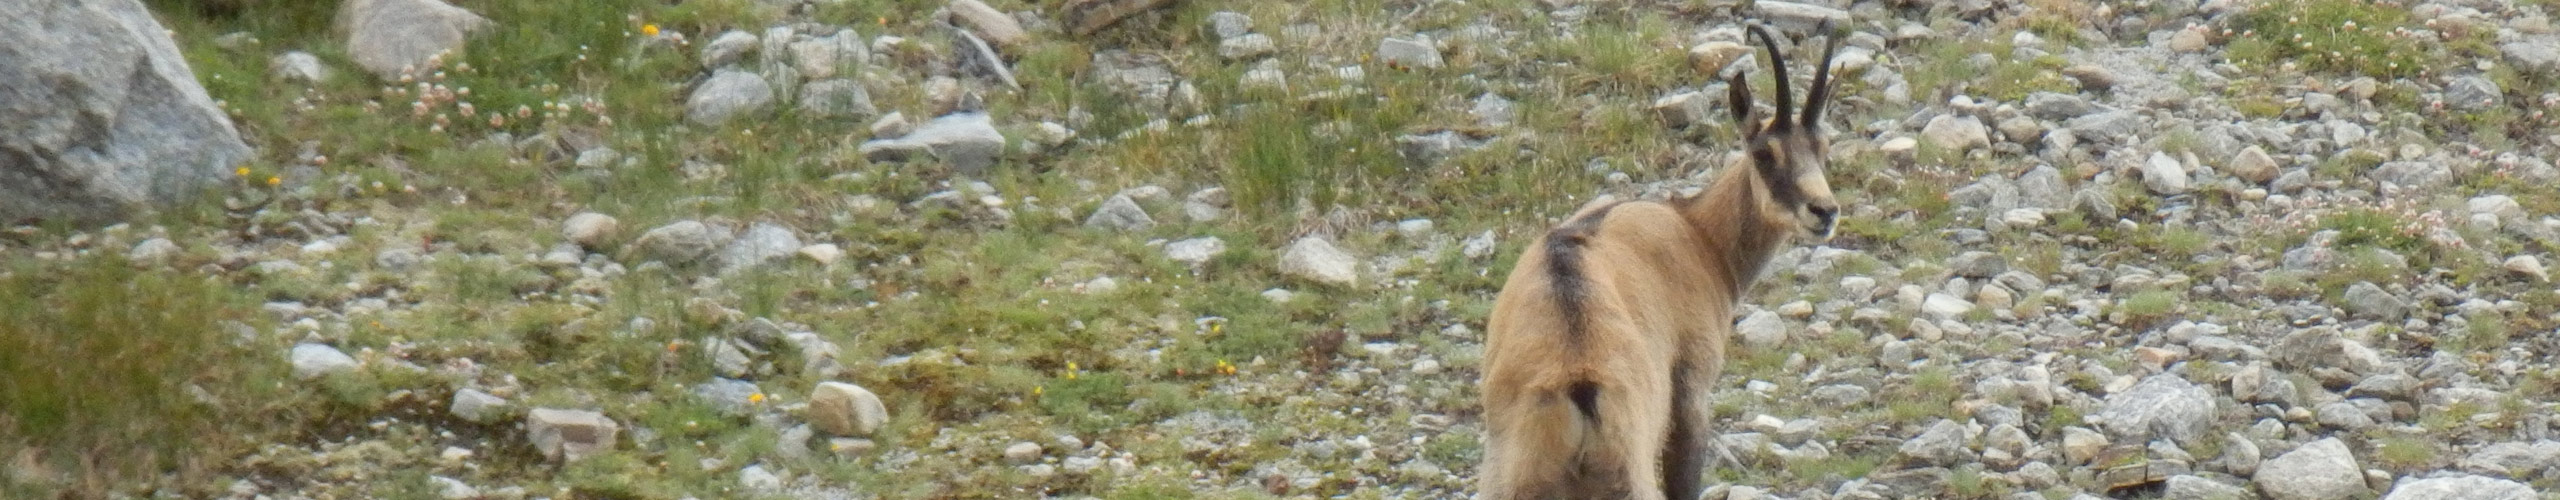 chamois dans le parc national italien